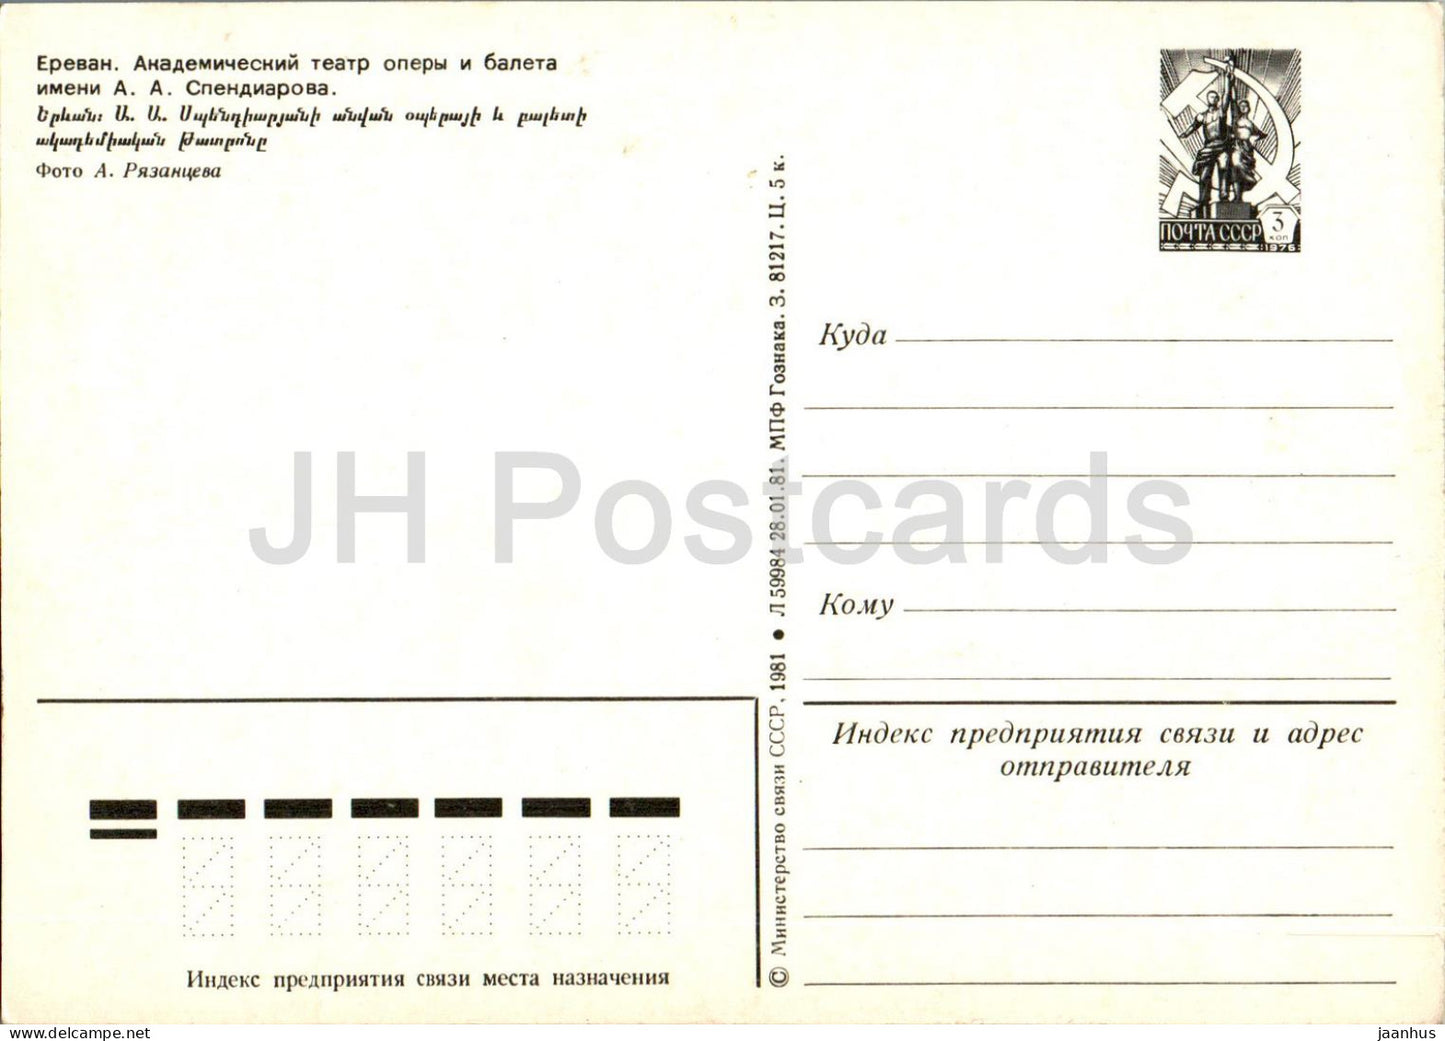 Erevan - Théâtre d'opéra et de ballet Spendiaryan - entier postal - 1981 - Arménie URSS - inutilisé 